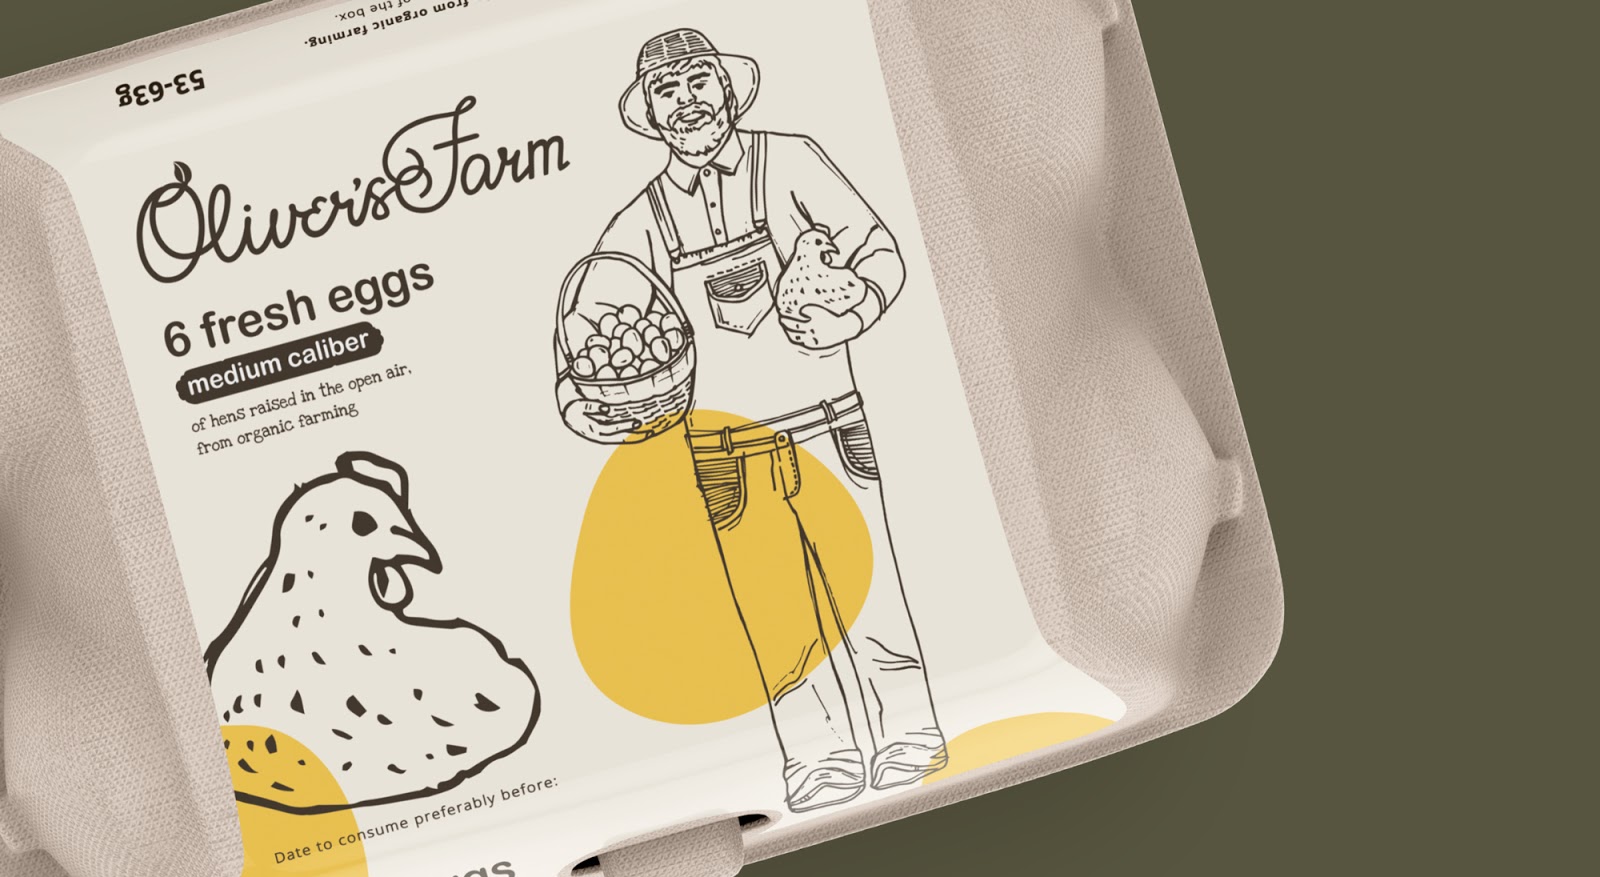 Oliver's Farm鸡蛋包装盒设计